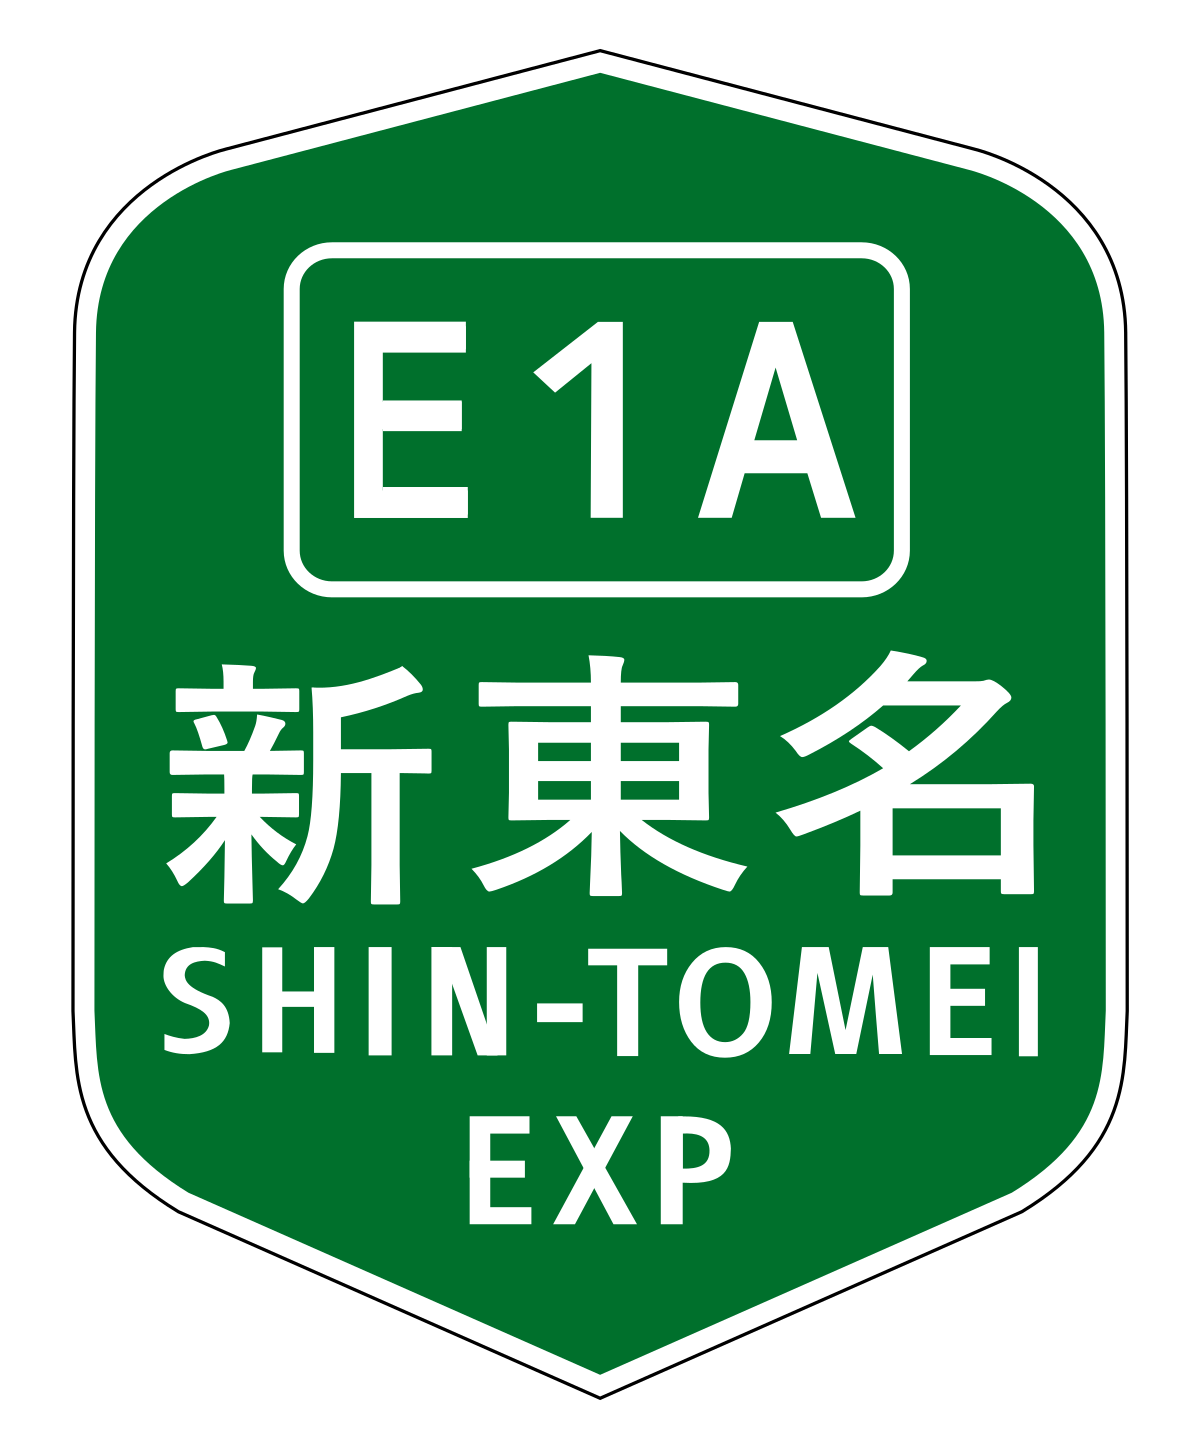 新東名高速道路 - Wikipedia